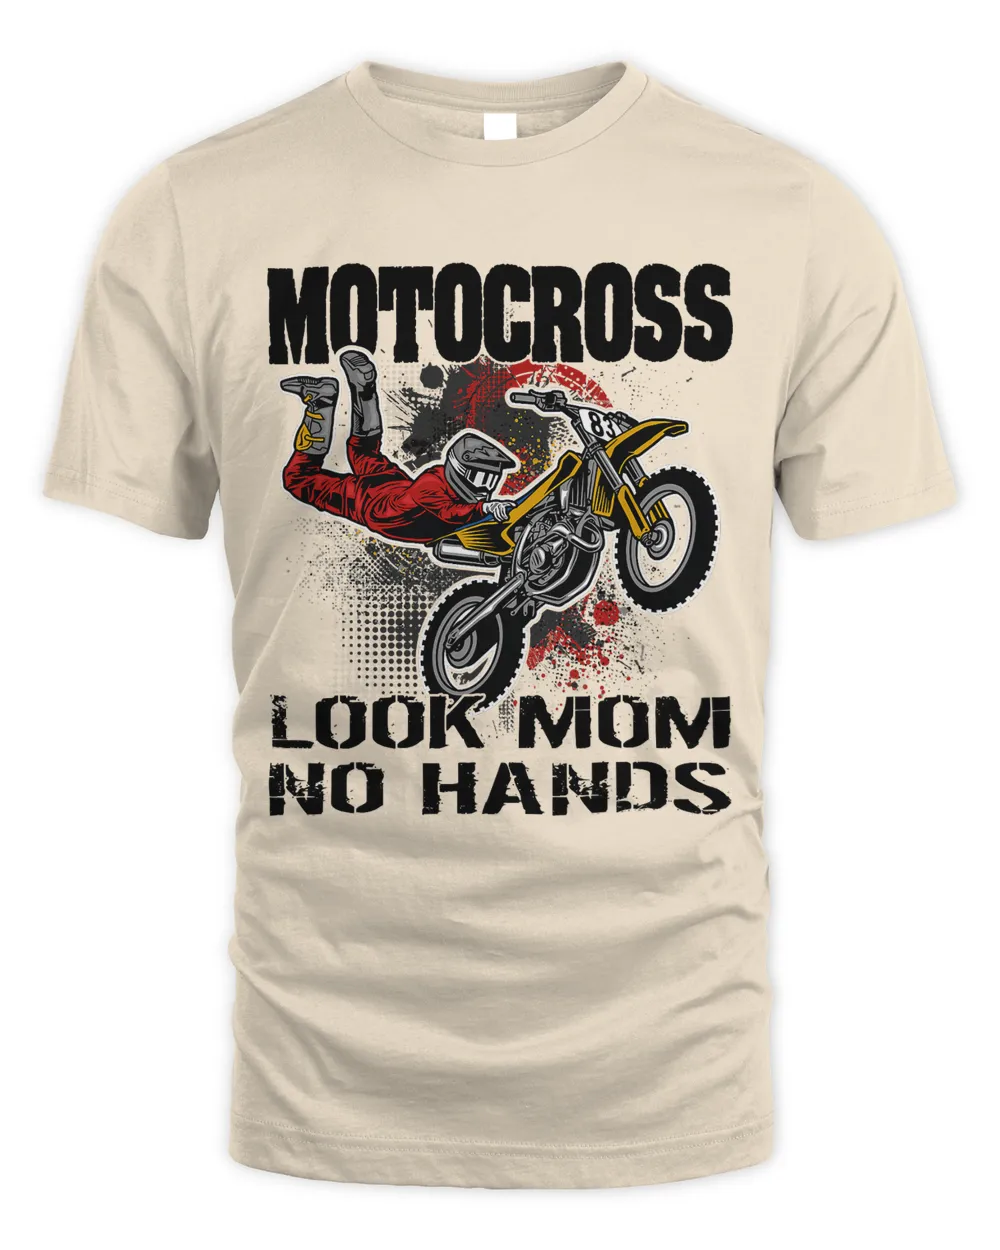 Motocross MX How every Morning shouldt start1